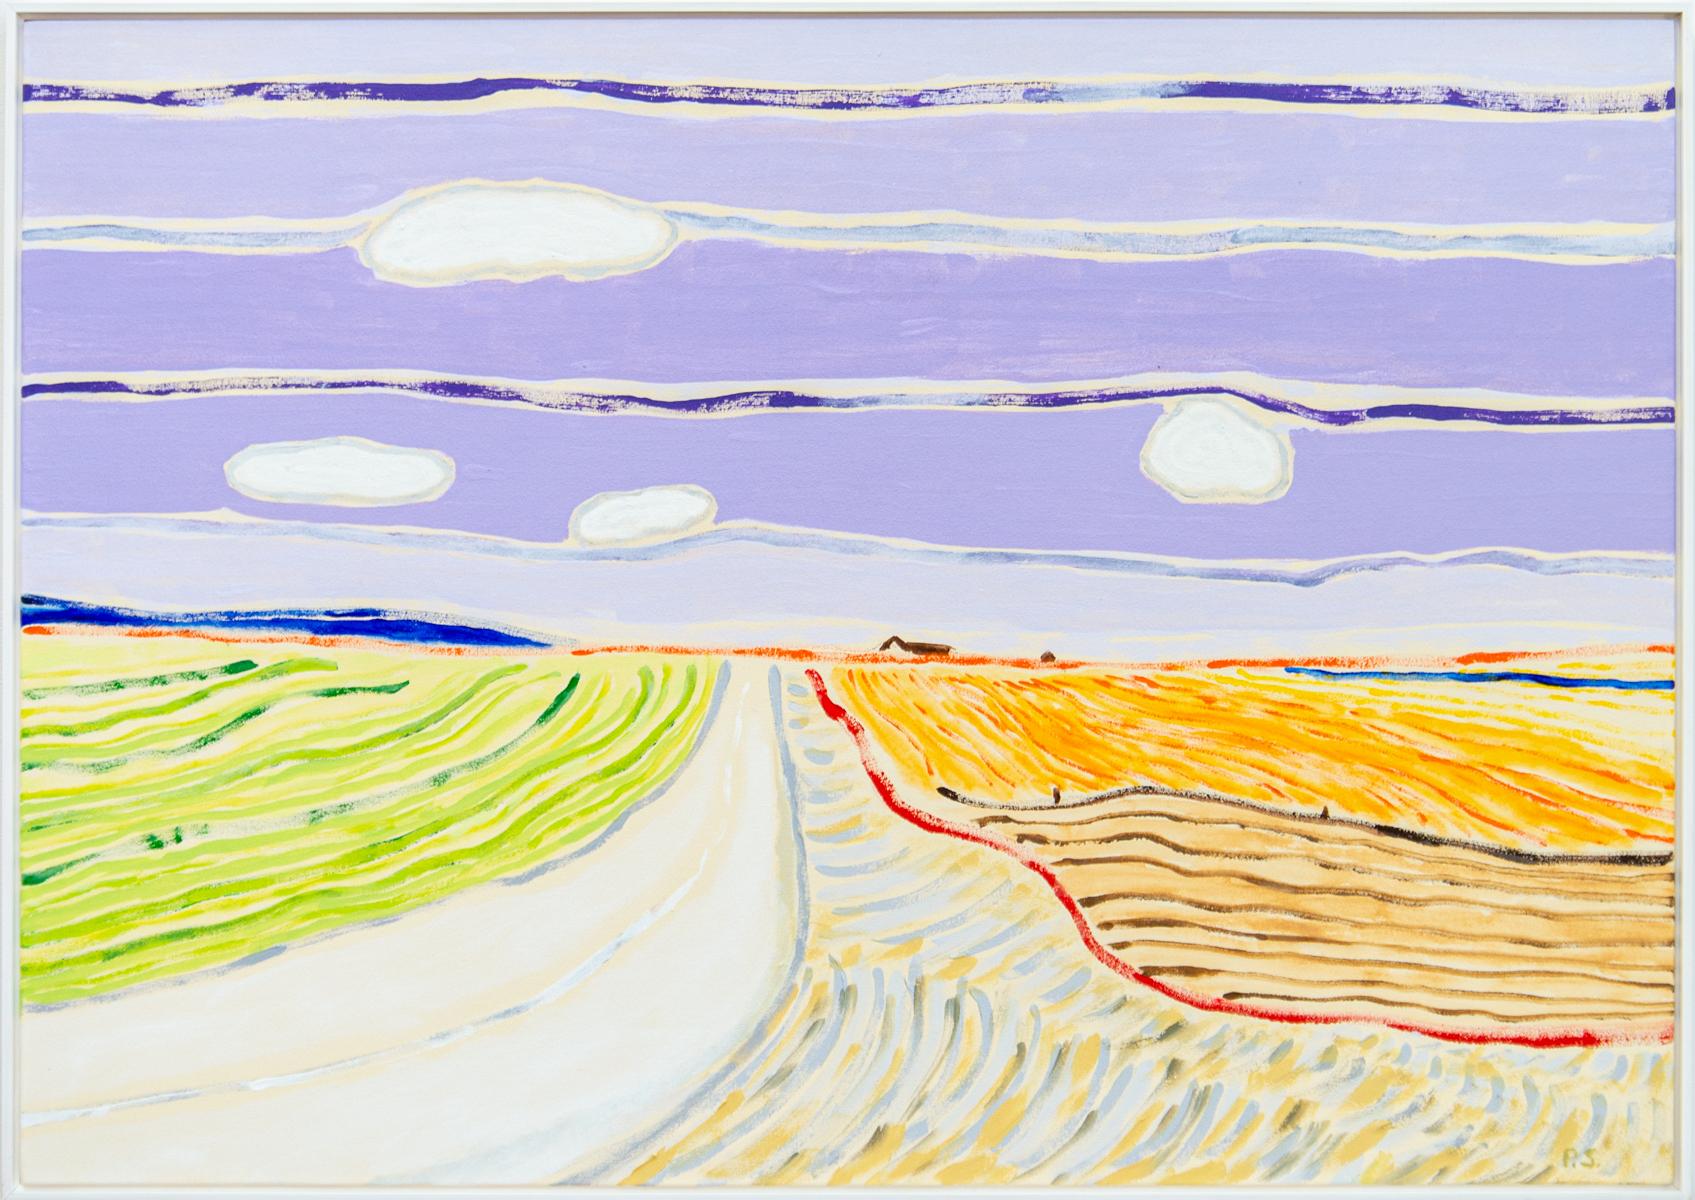 Crops - grand paysage abstrait, brillant, coloré, acrylique sur toile - Painting de Pat Service